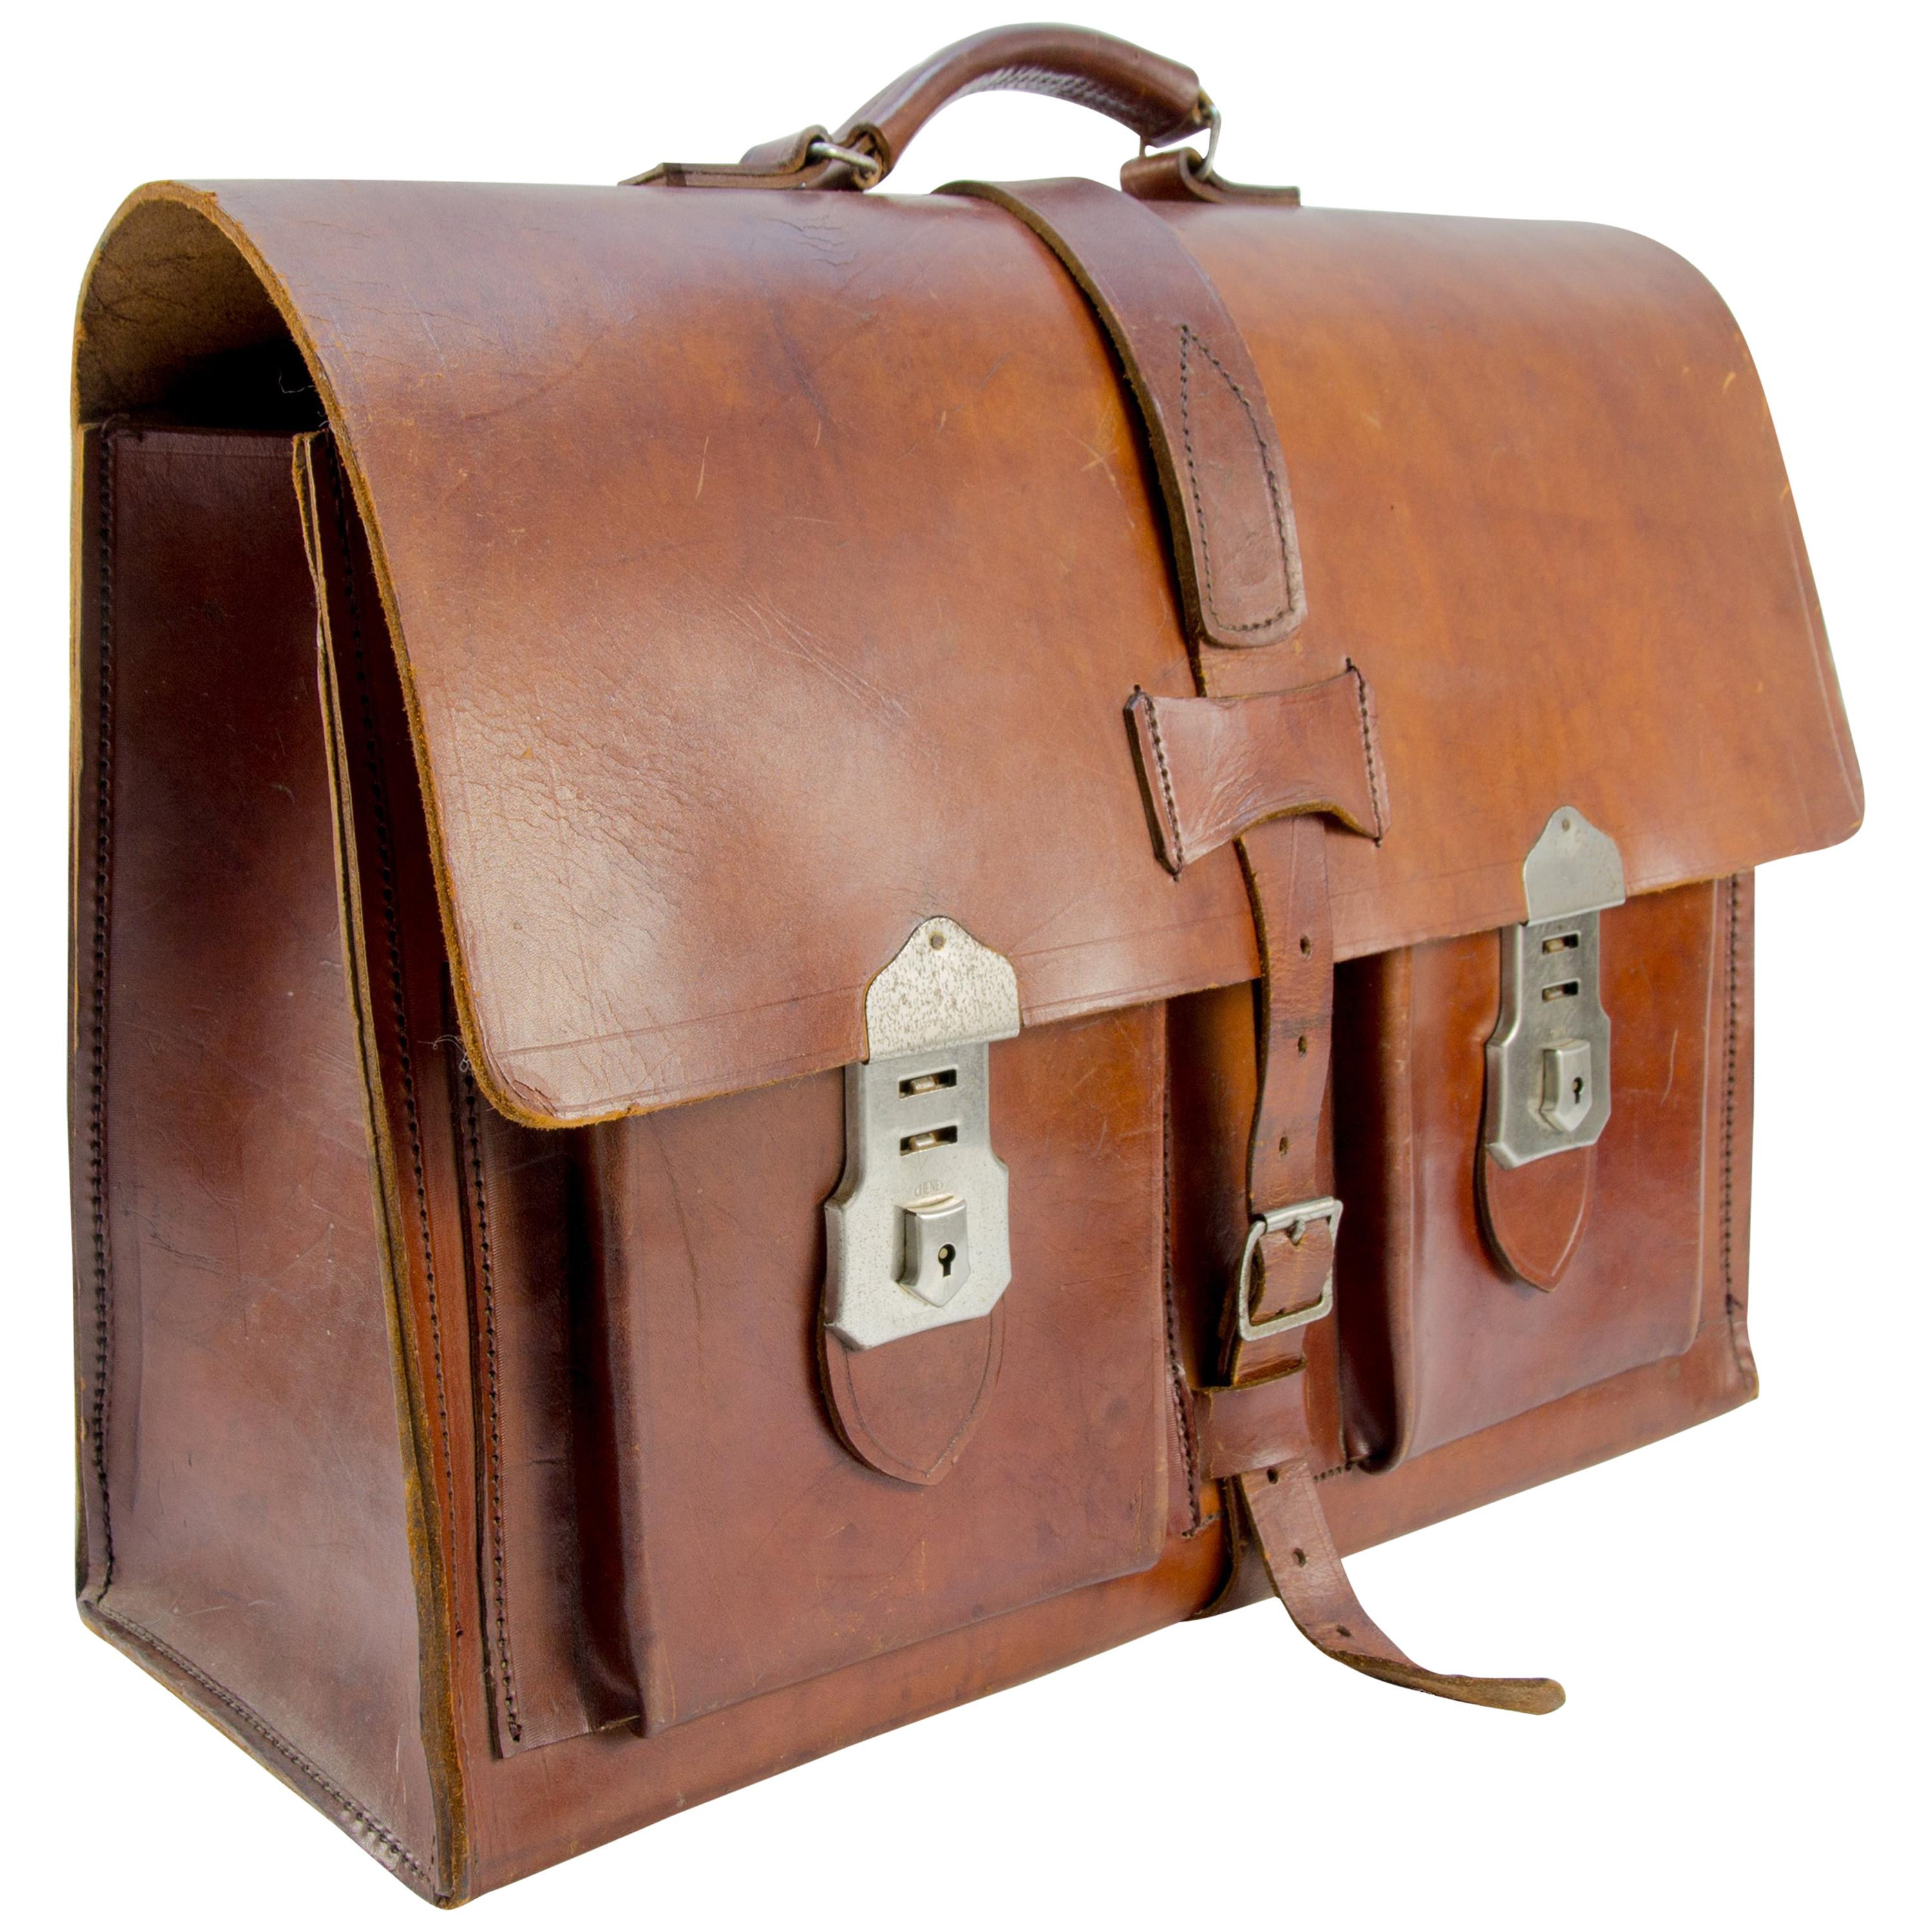 Vintage bag for documents Vintage Briefcase leather Briefcase Vintage Bag